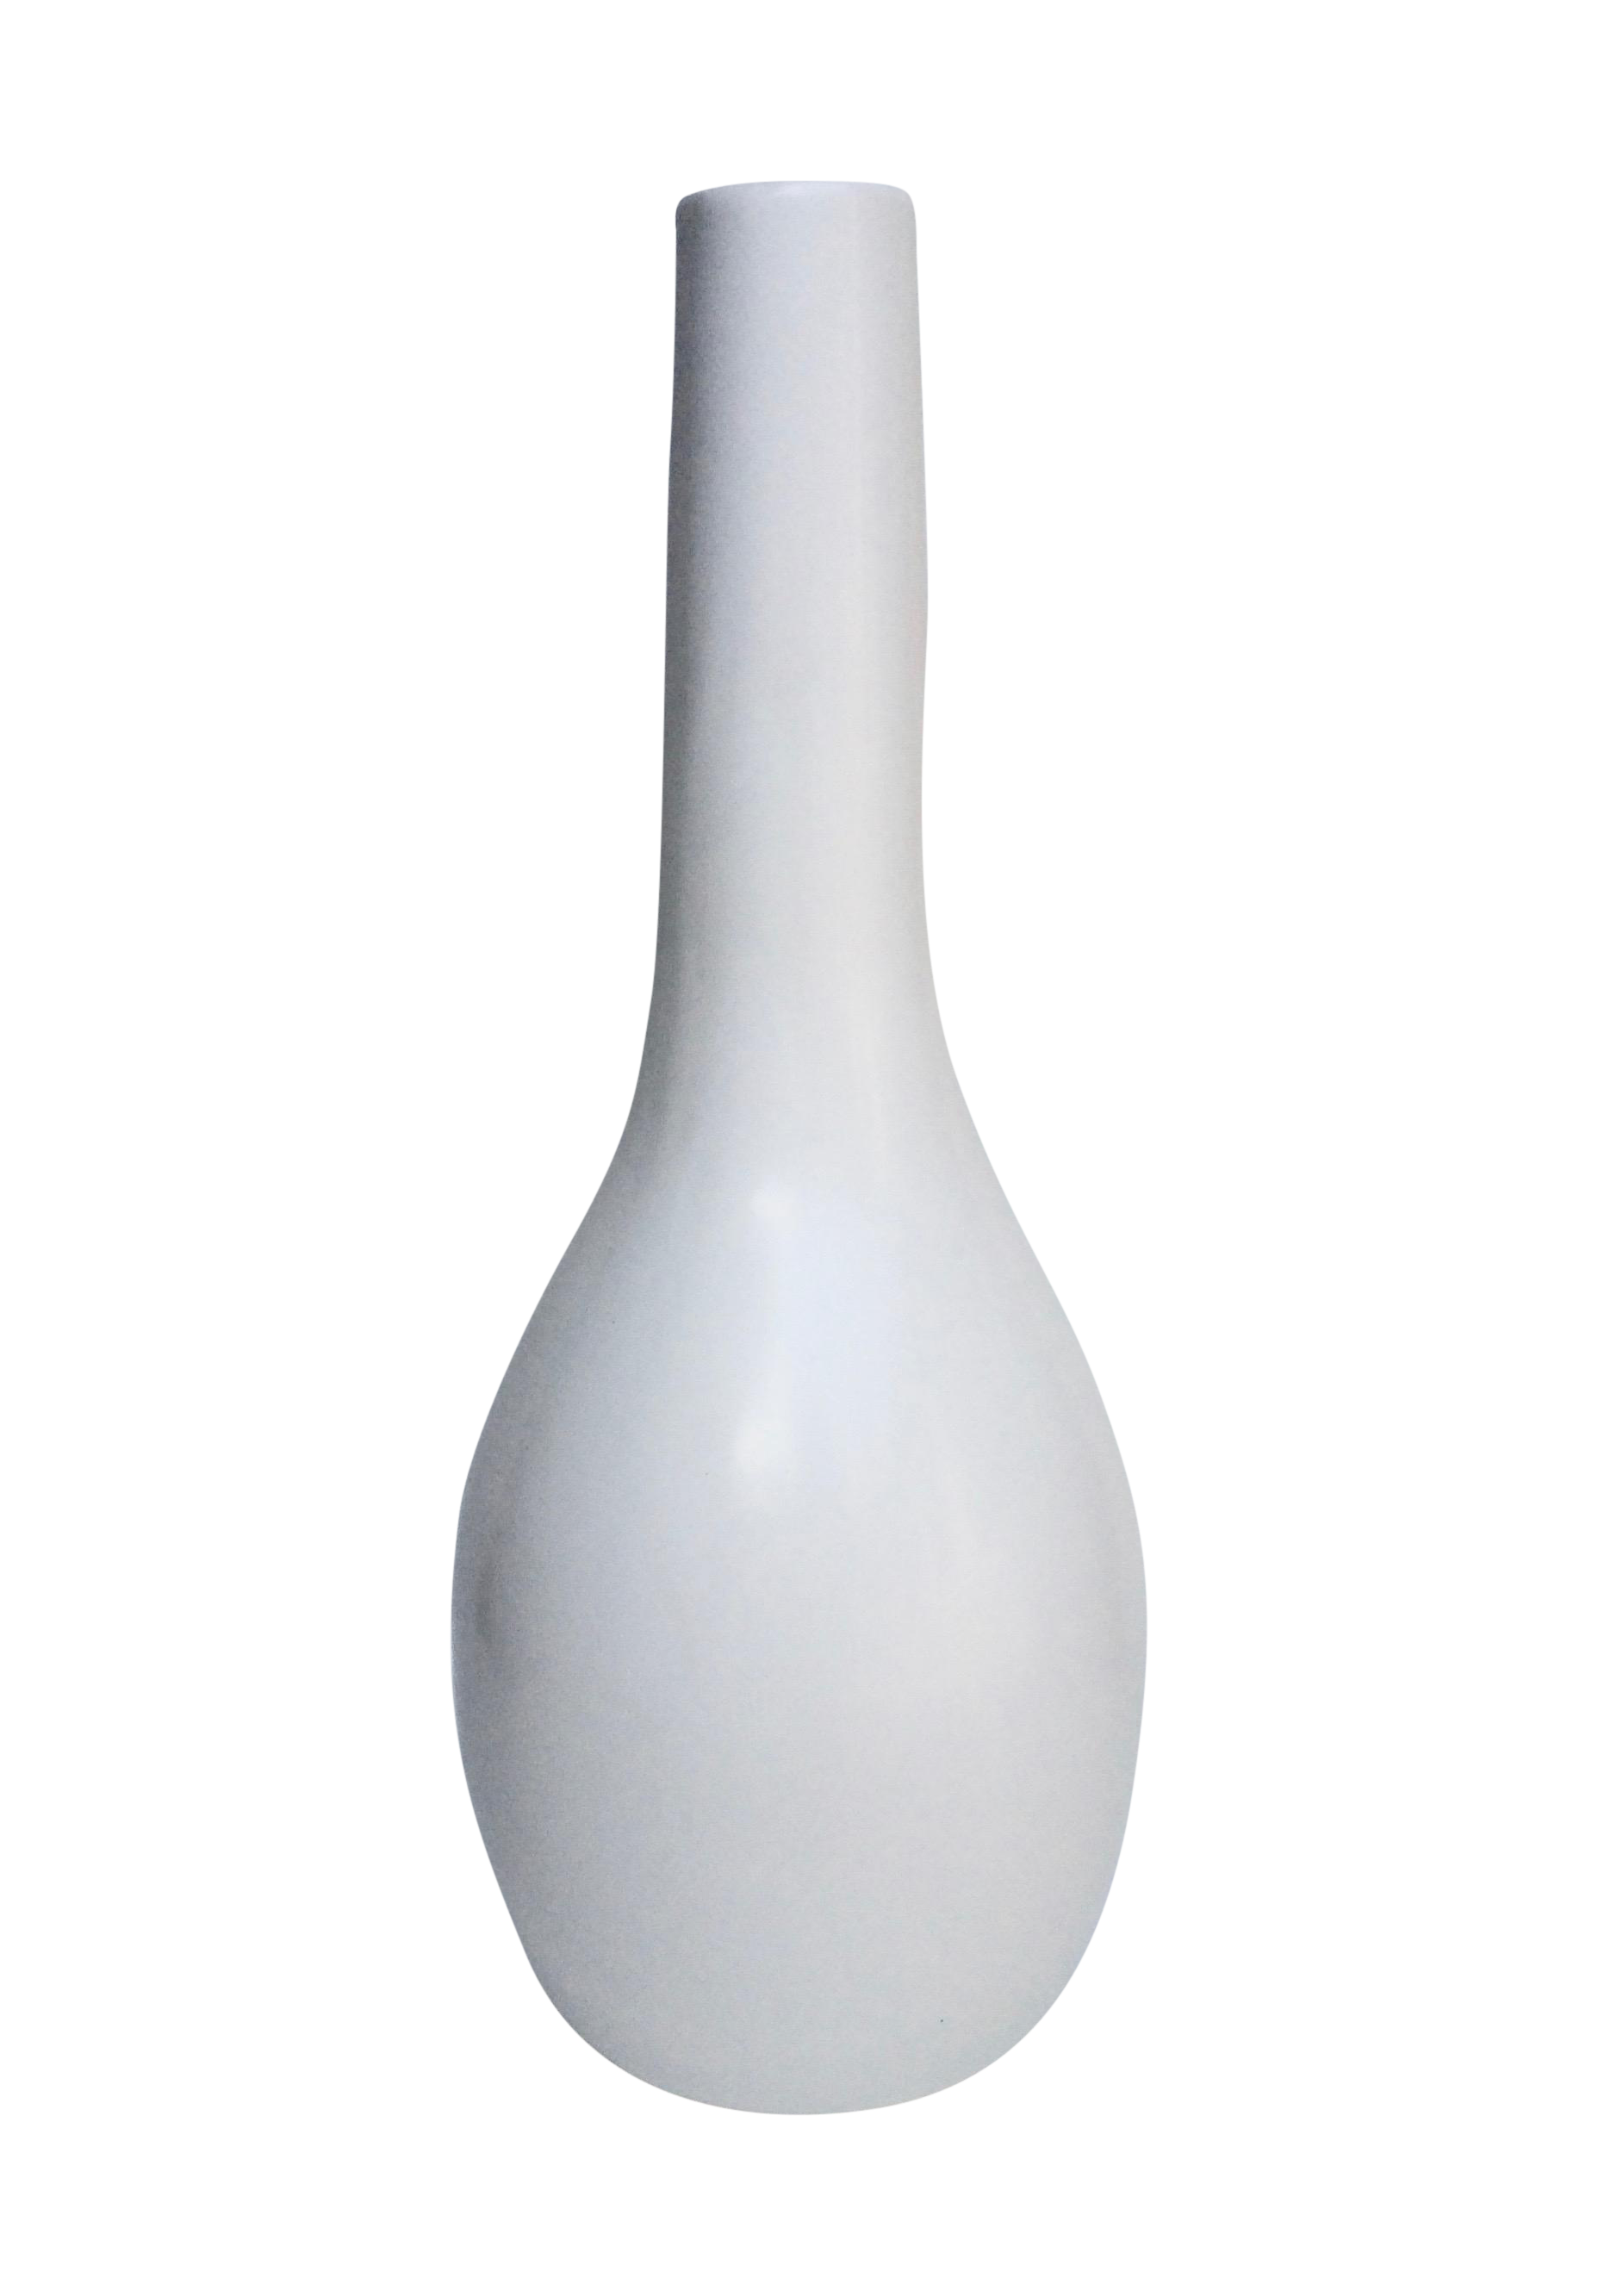 Image de fond de vase moderne